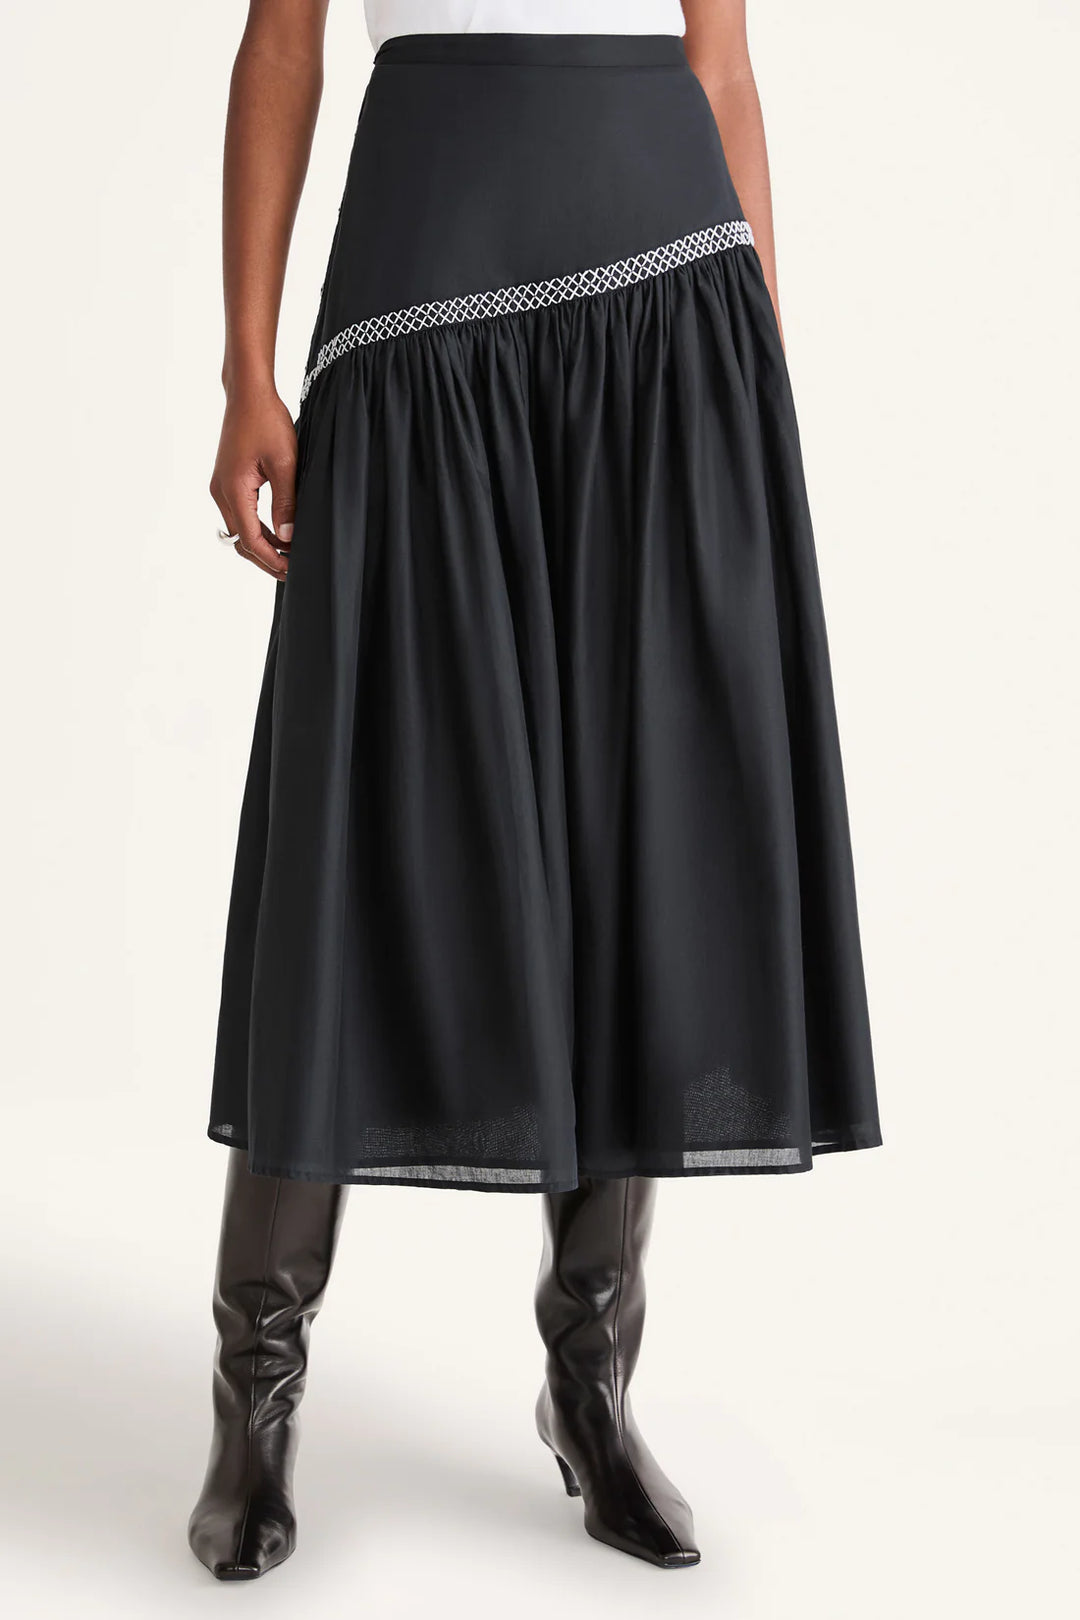 Elinga Skirt in Black